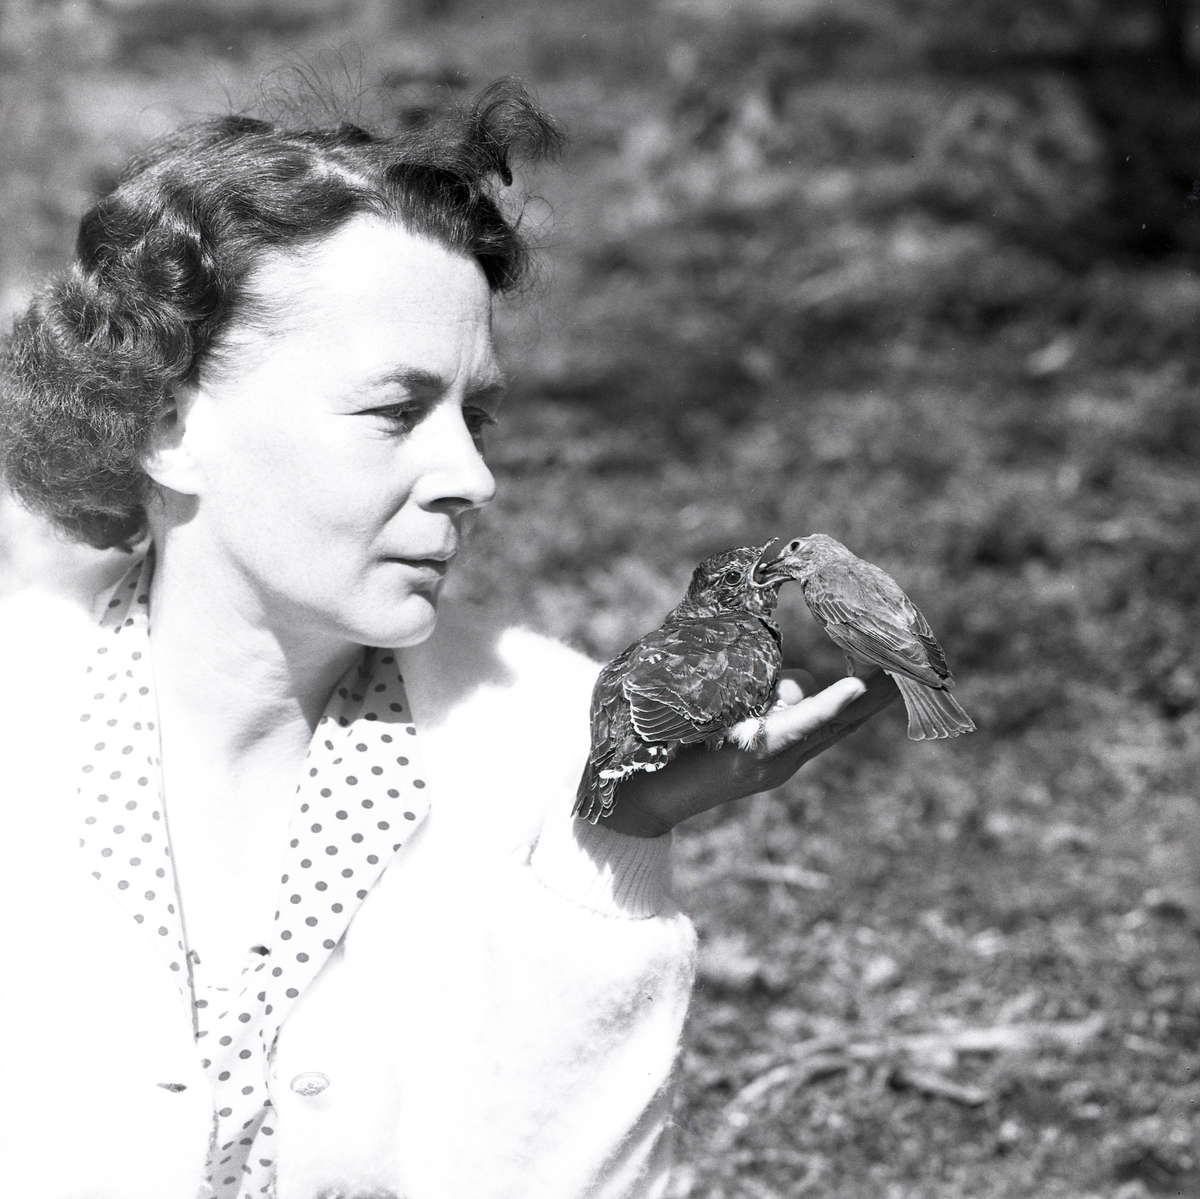 En gökunge blir matad av en fågelhona medan den sitter i handen på en kvinna, 13 juli 1961.